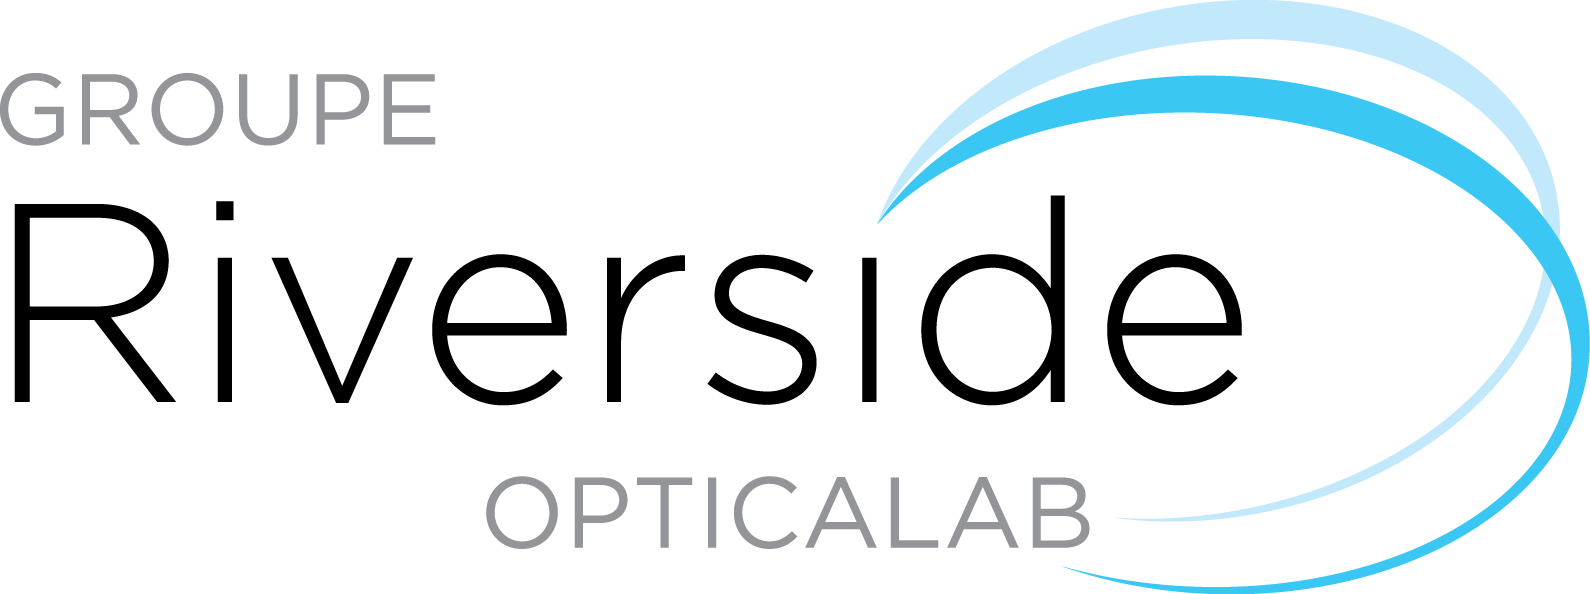 Optics Lab Logo - Riverside Opticalab -